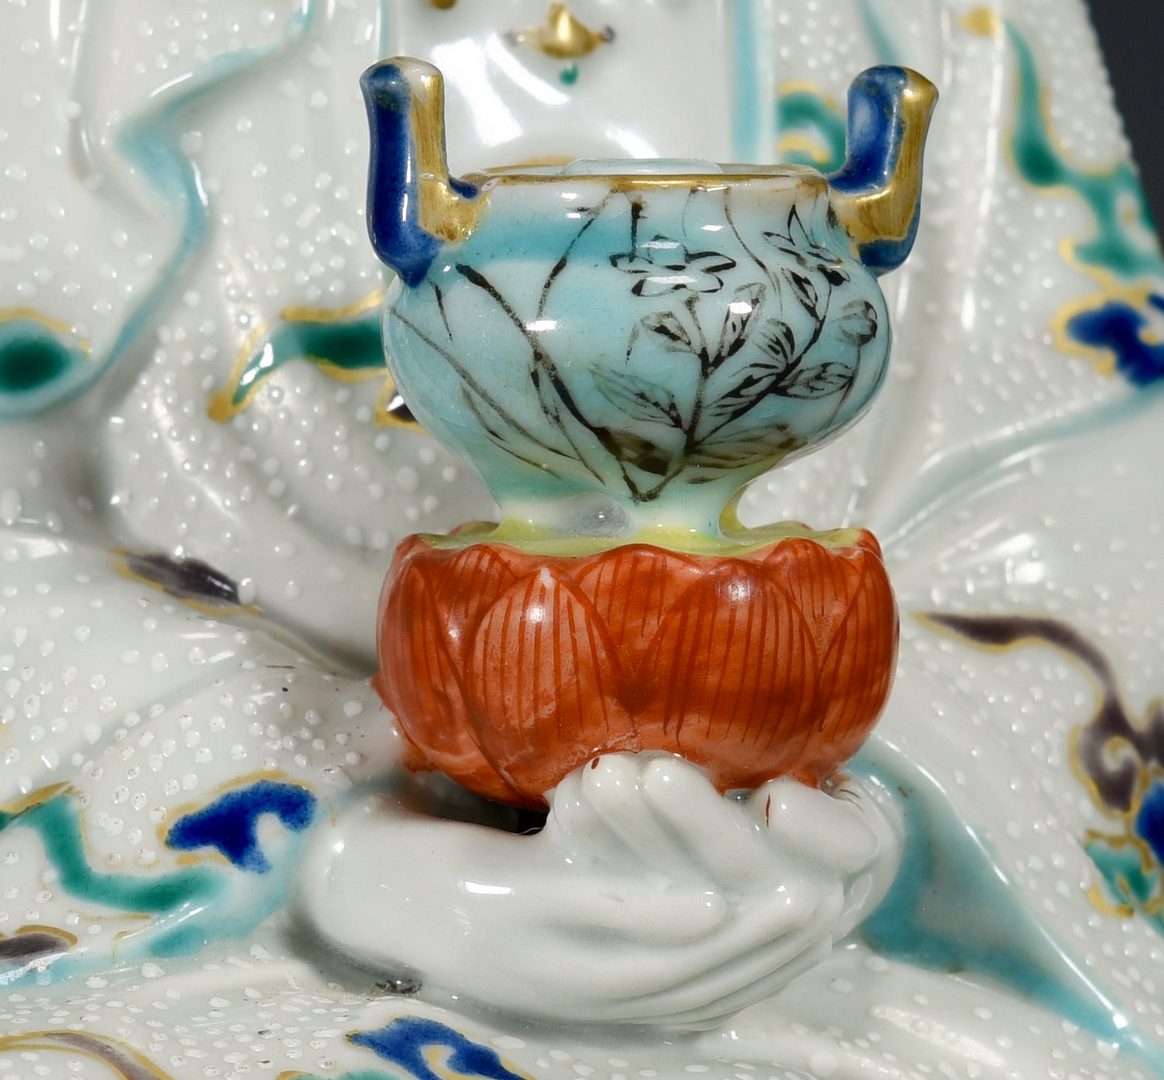 Lot 25: Chinese Porcelain Guan Yin Figure